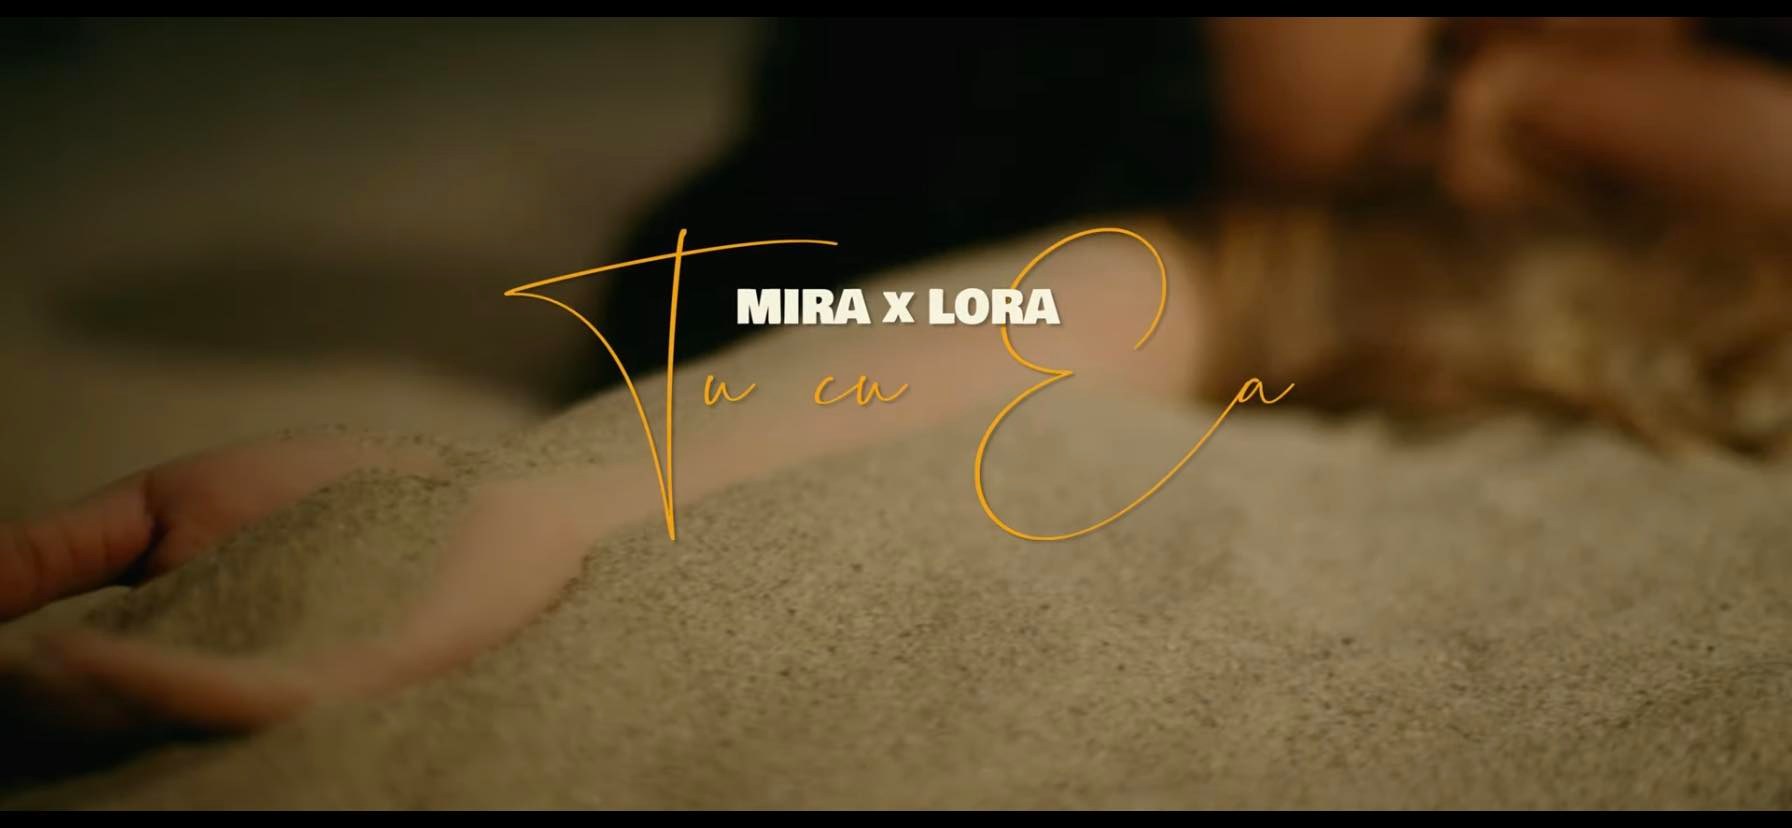 Lora și Mira au colaborat pentru prima dată și au lansat „Tu cu ea”. Piesa s-a auzit în avanpremieră în Morning ZU